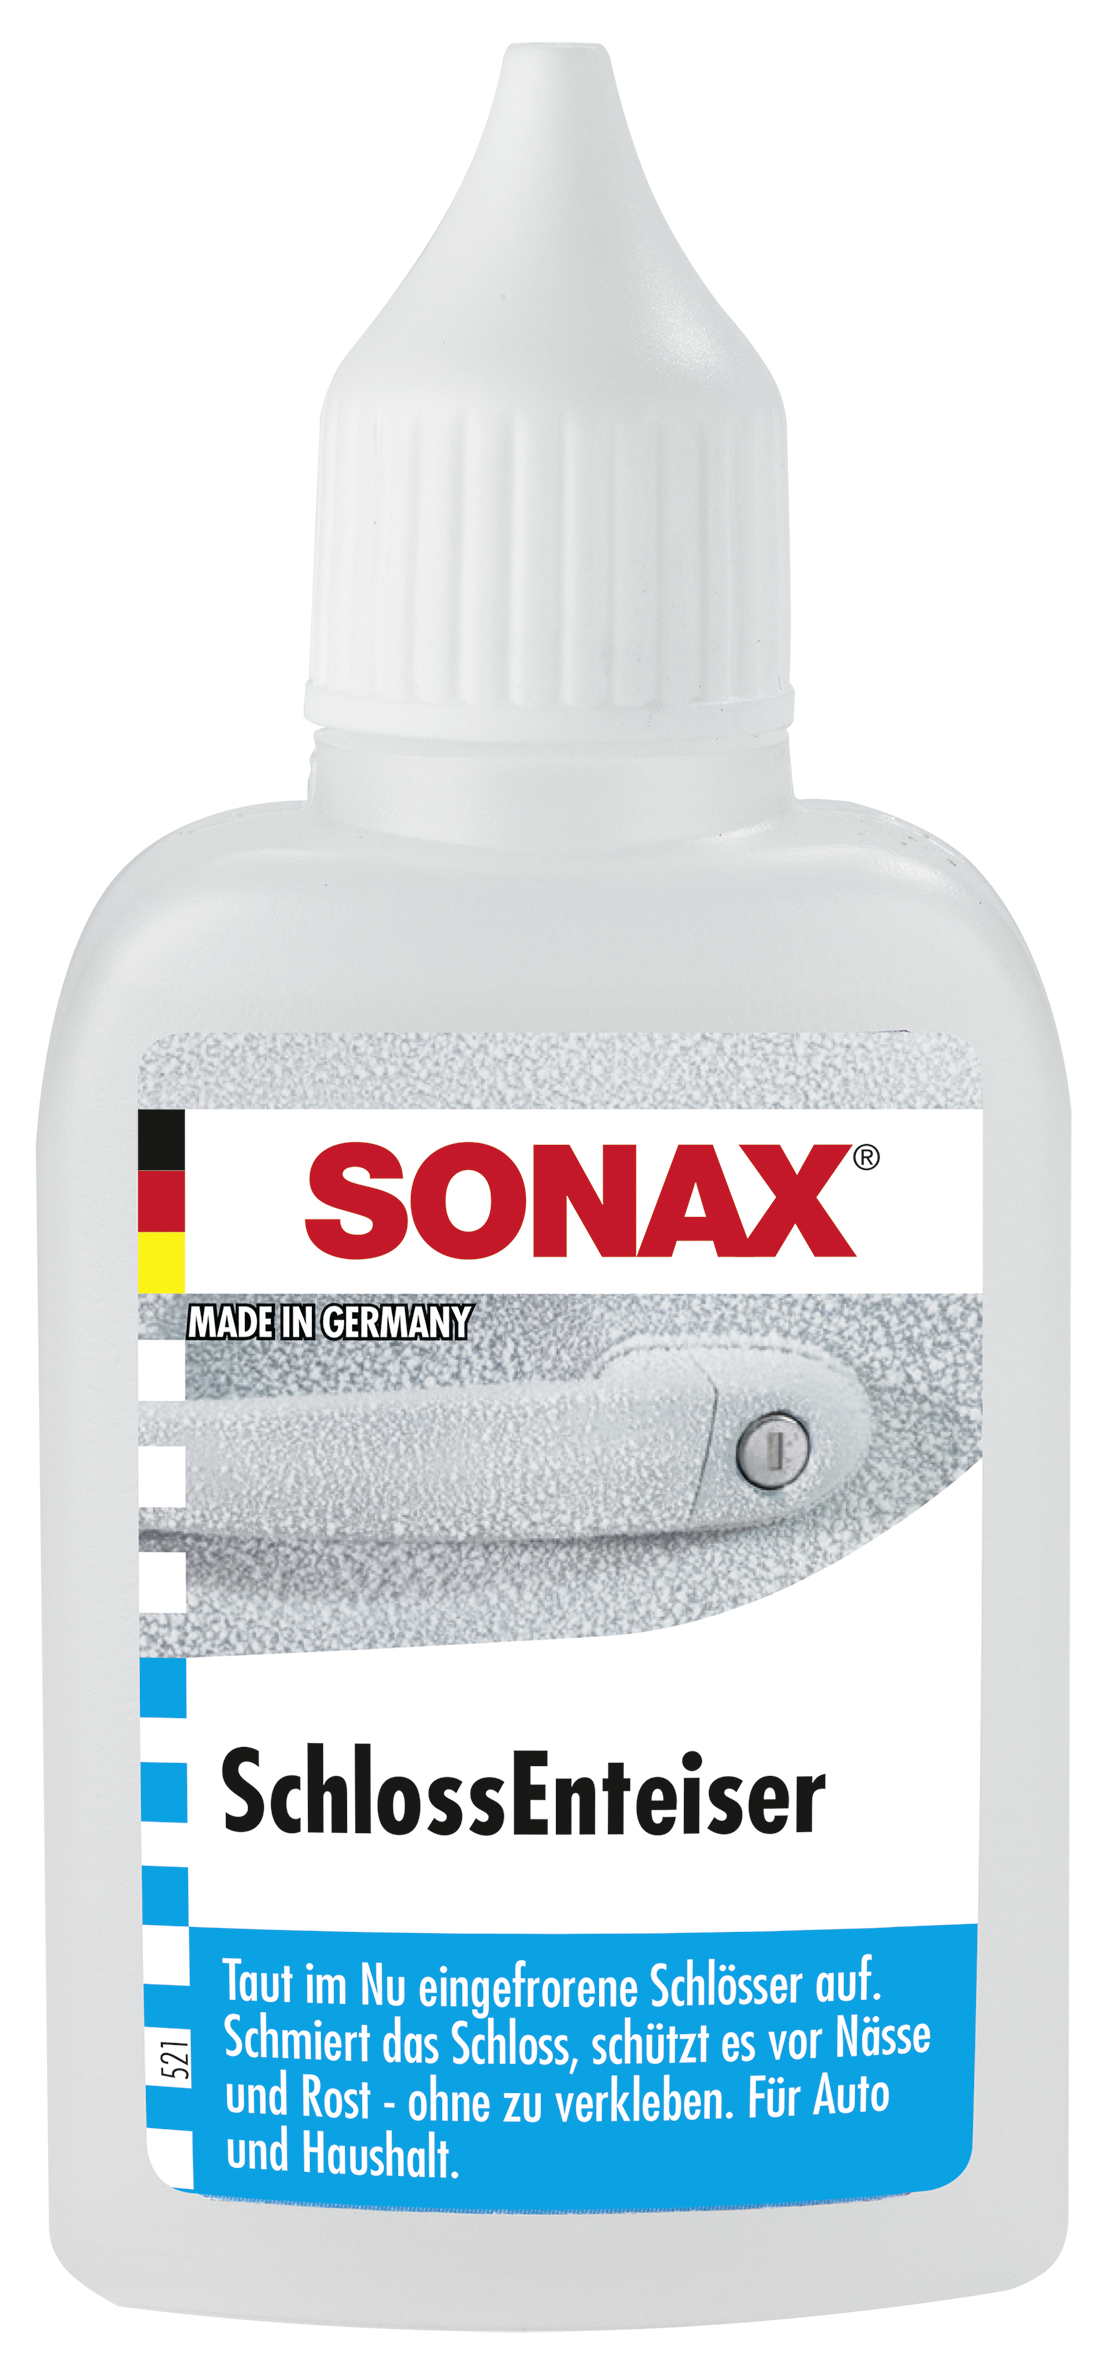 Sonax Schloß Enteiser 50ml Plastikflasche - Sonax - Shop Schweiz.